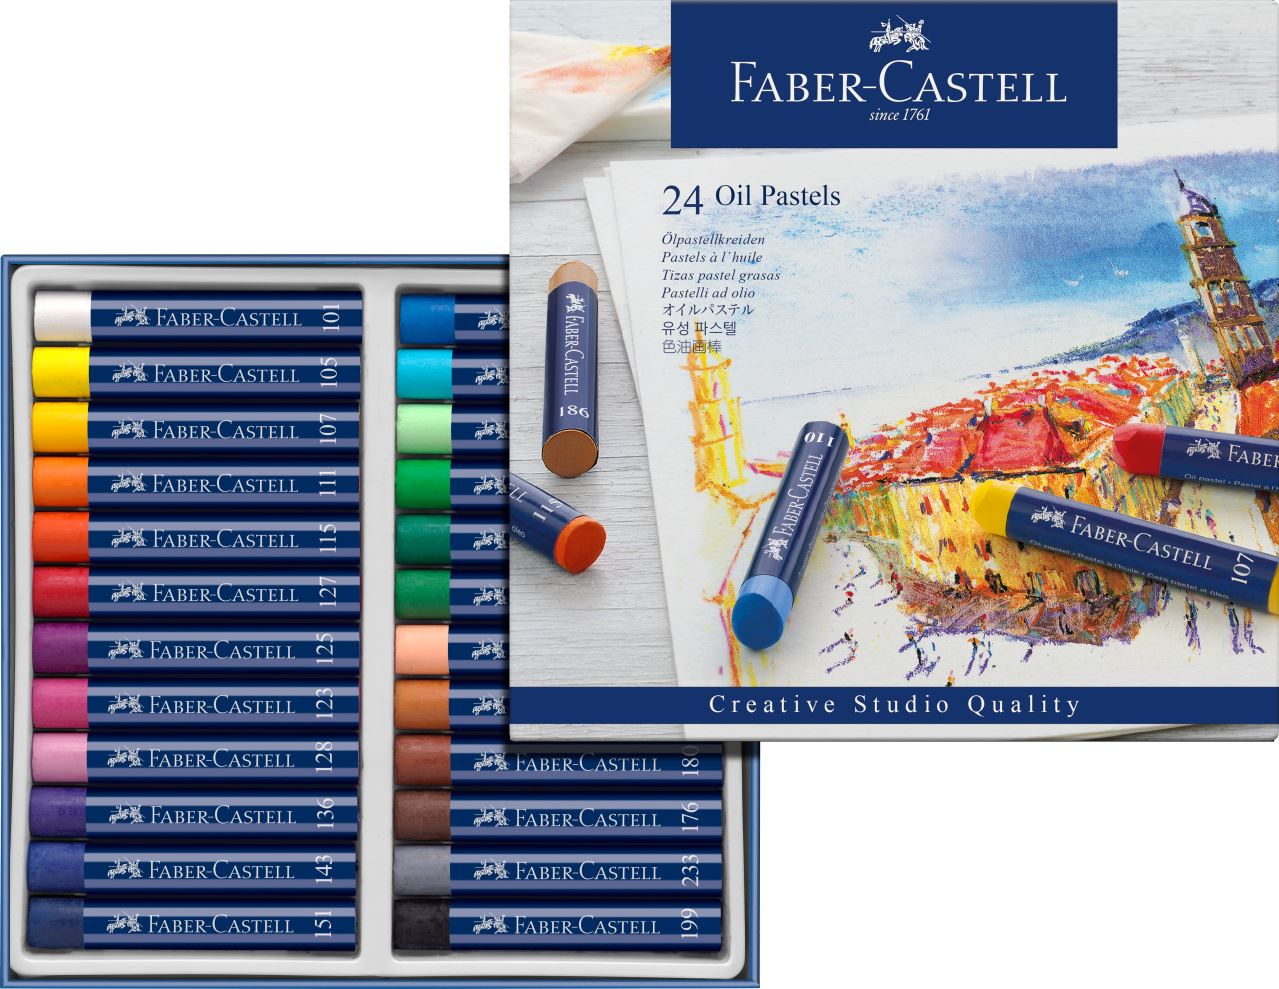 Faber-Castell - Estuche con 24 pasteles grasos